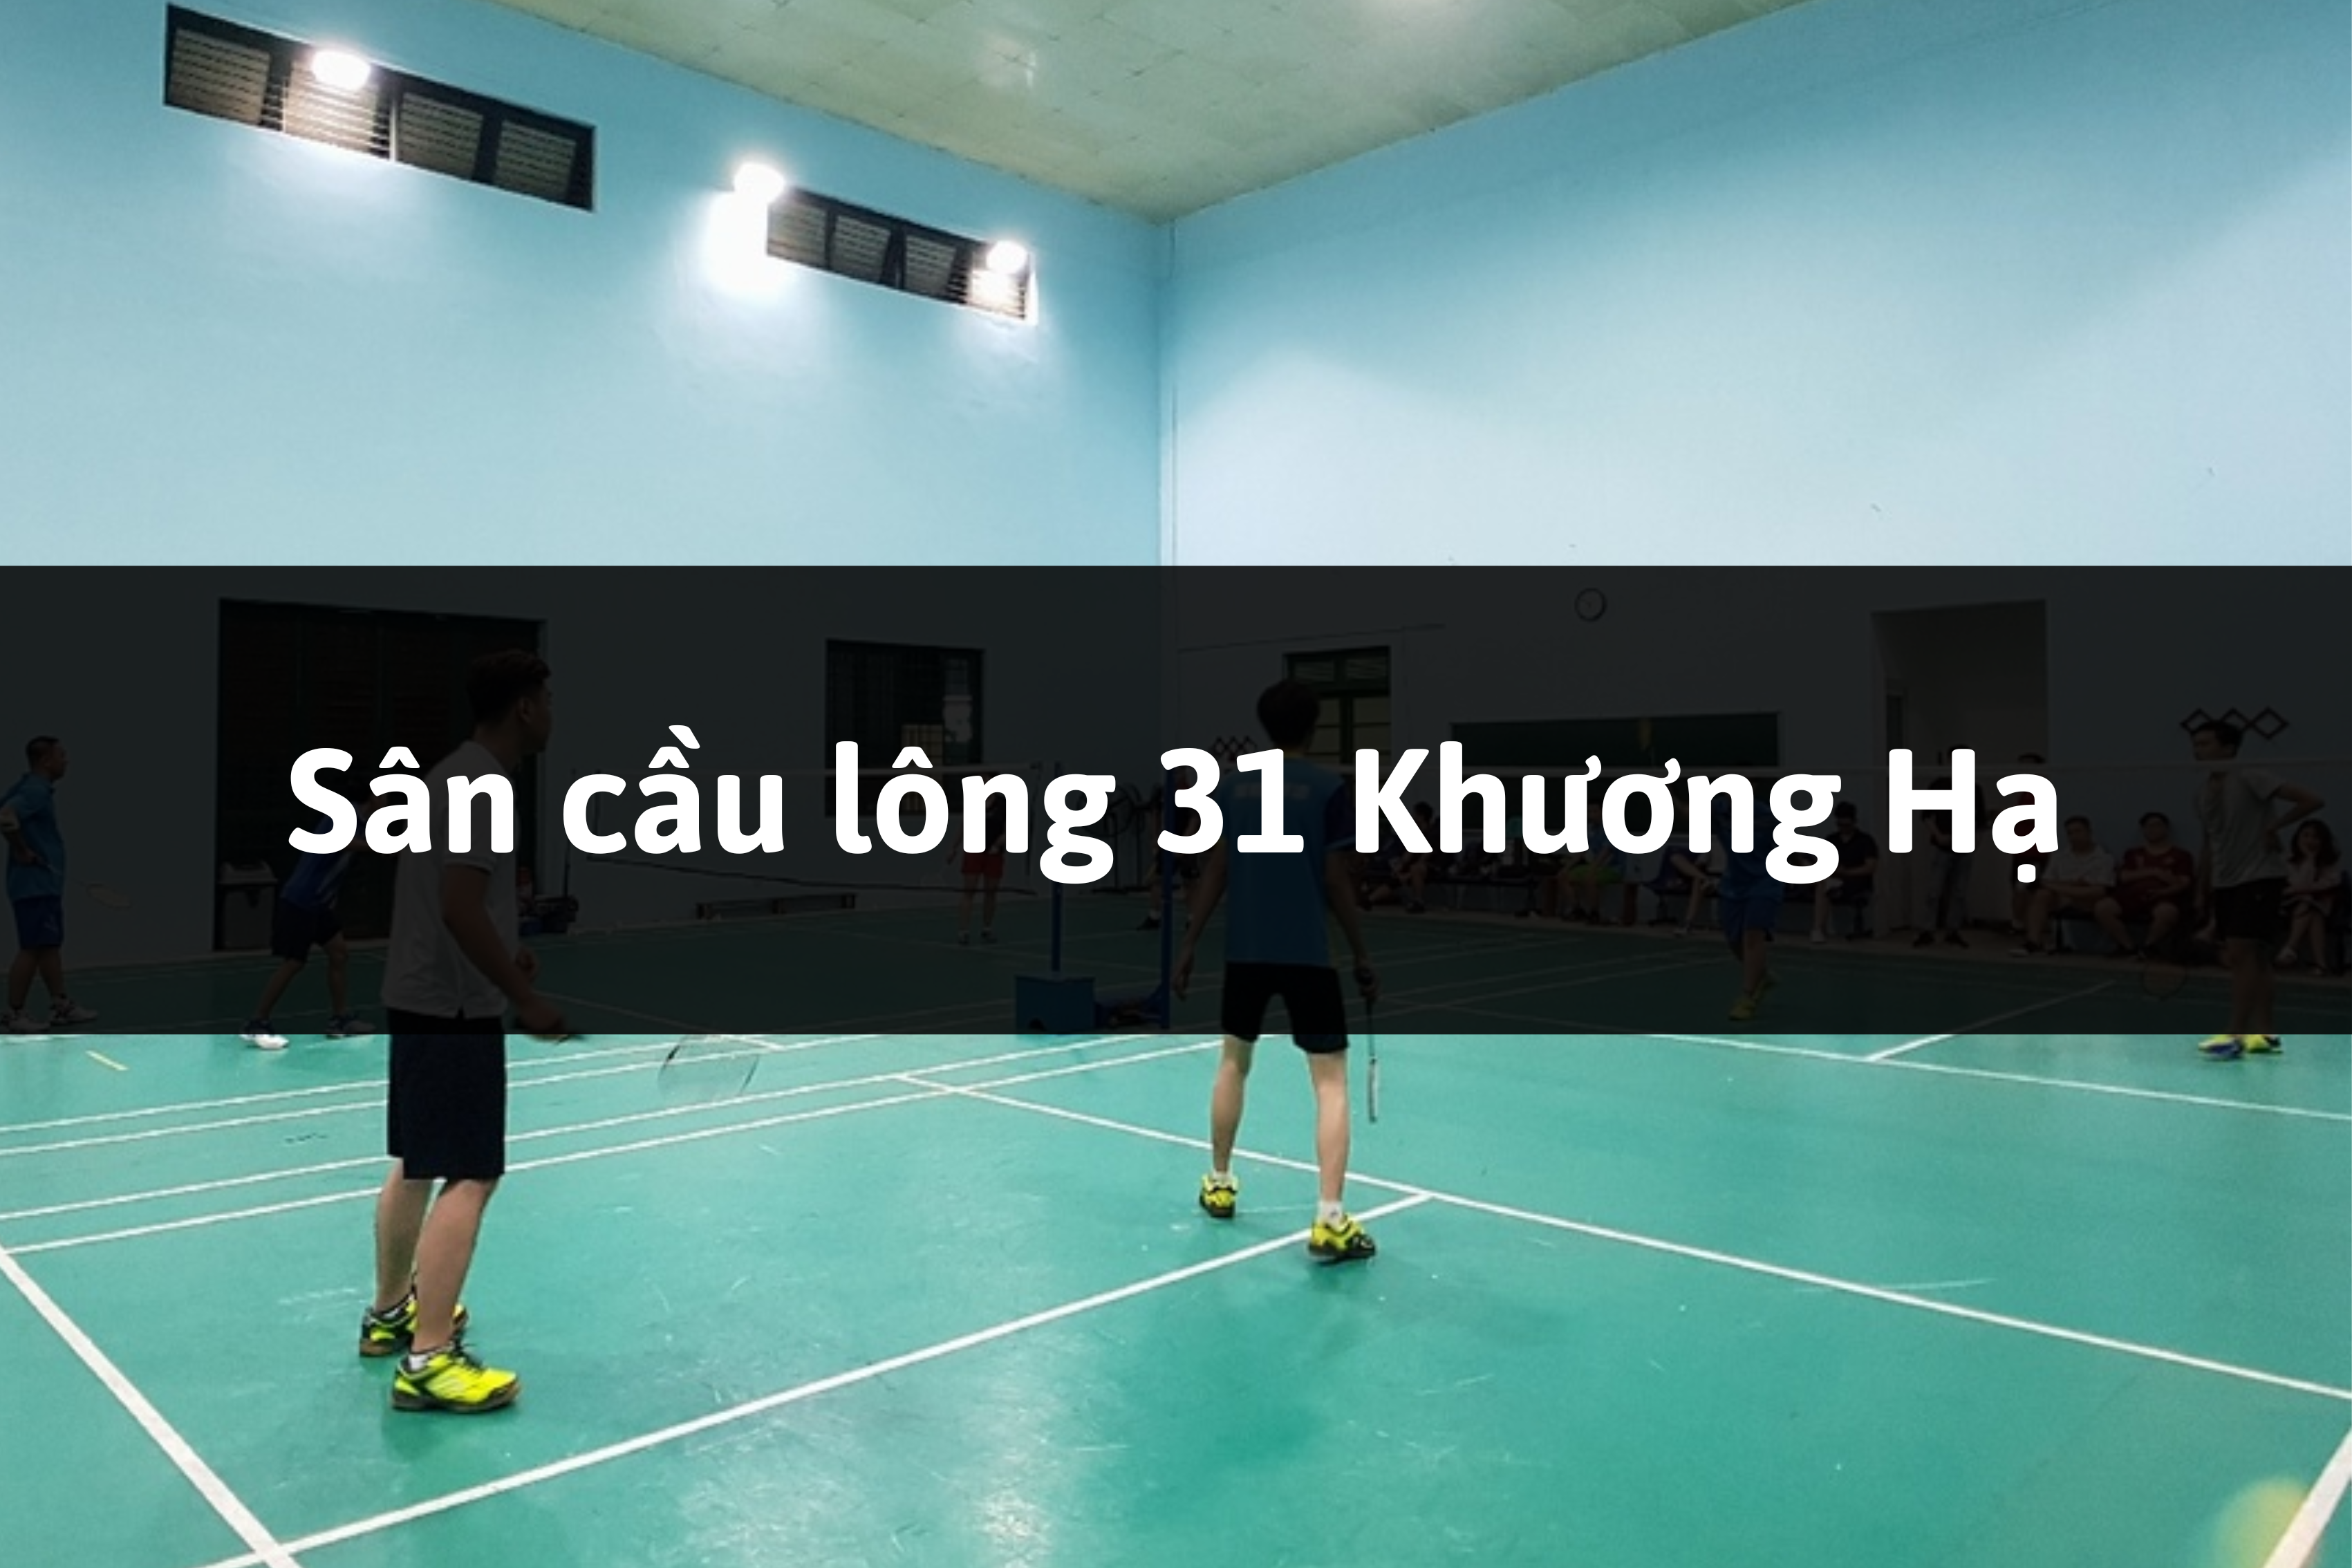 Sân cầu lông 31 Khương Hạ, Quận Thanh Xuân, Hà Nội